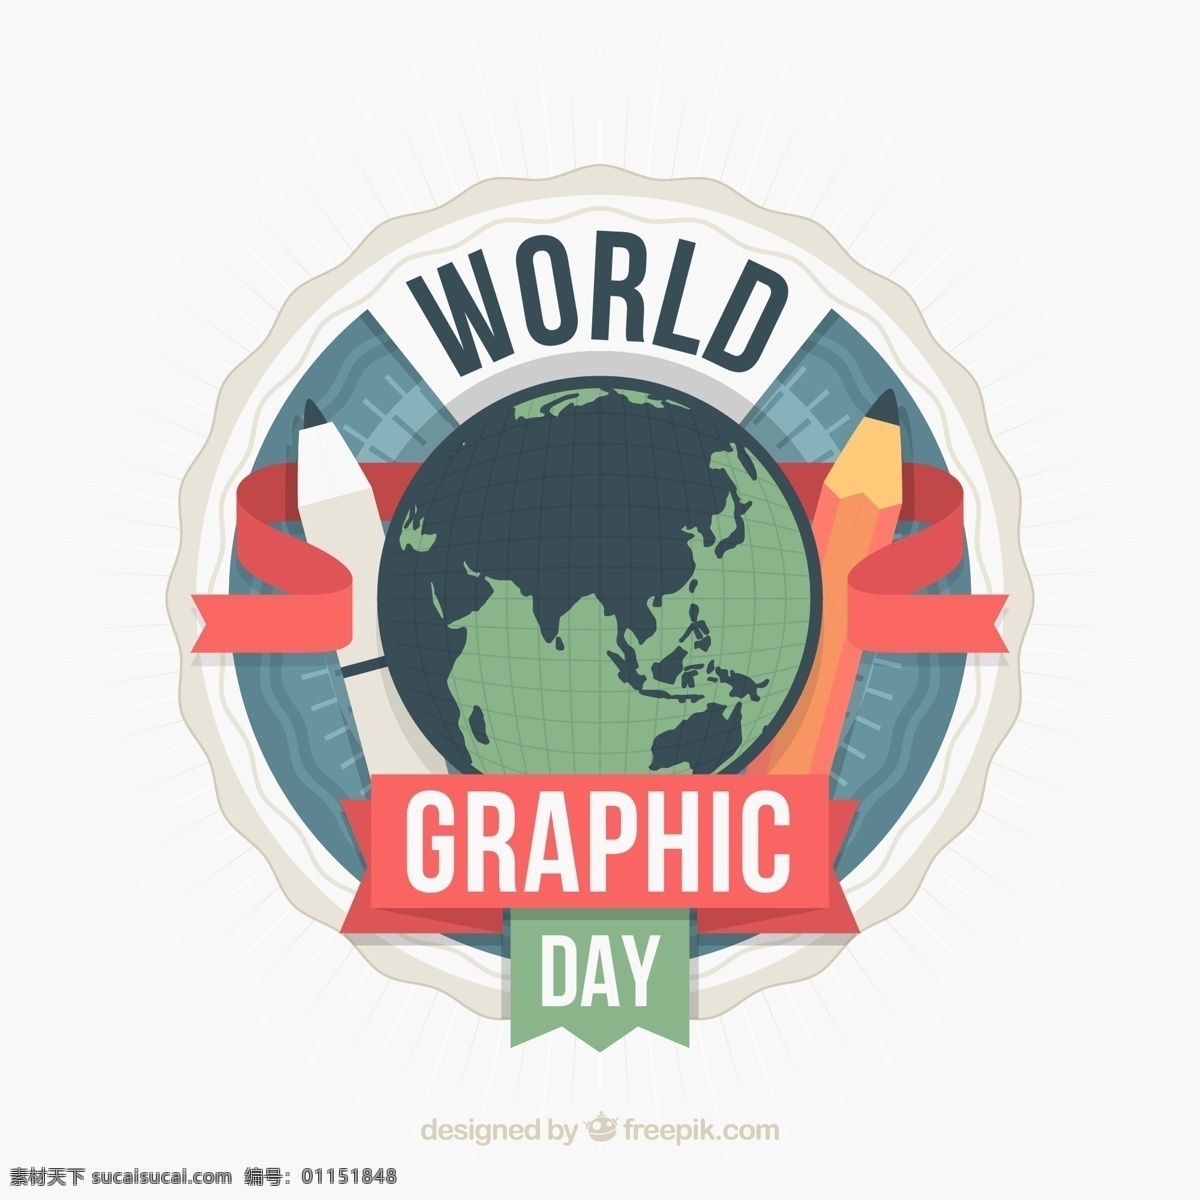 创意 世界 平面设计 日 地球 world graphics day 平面设计日 铅笔 彩色铅笔 文化艺术 绘画书法